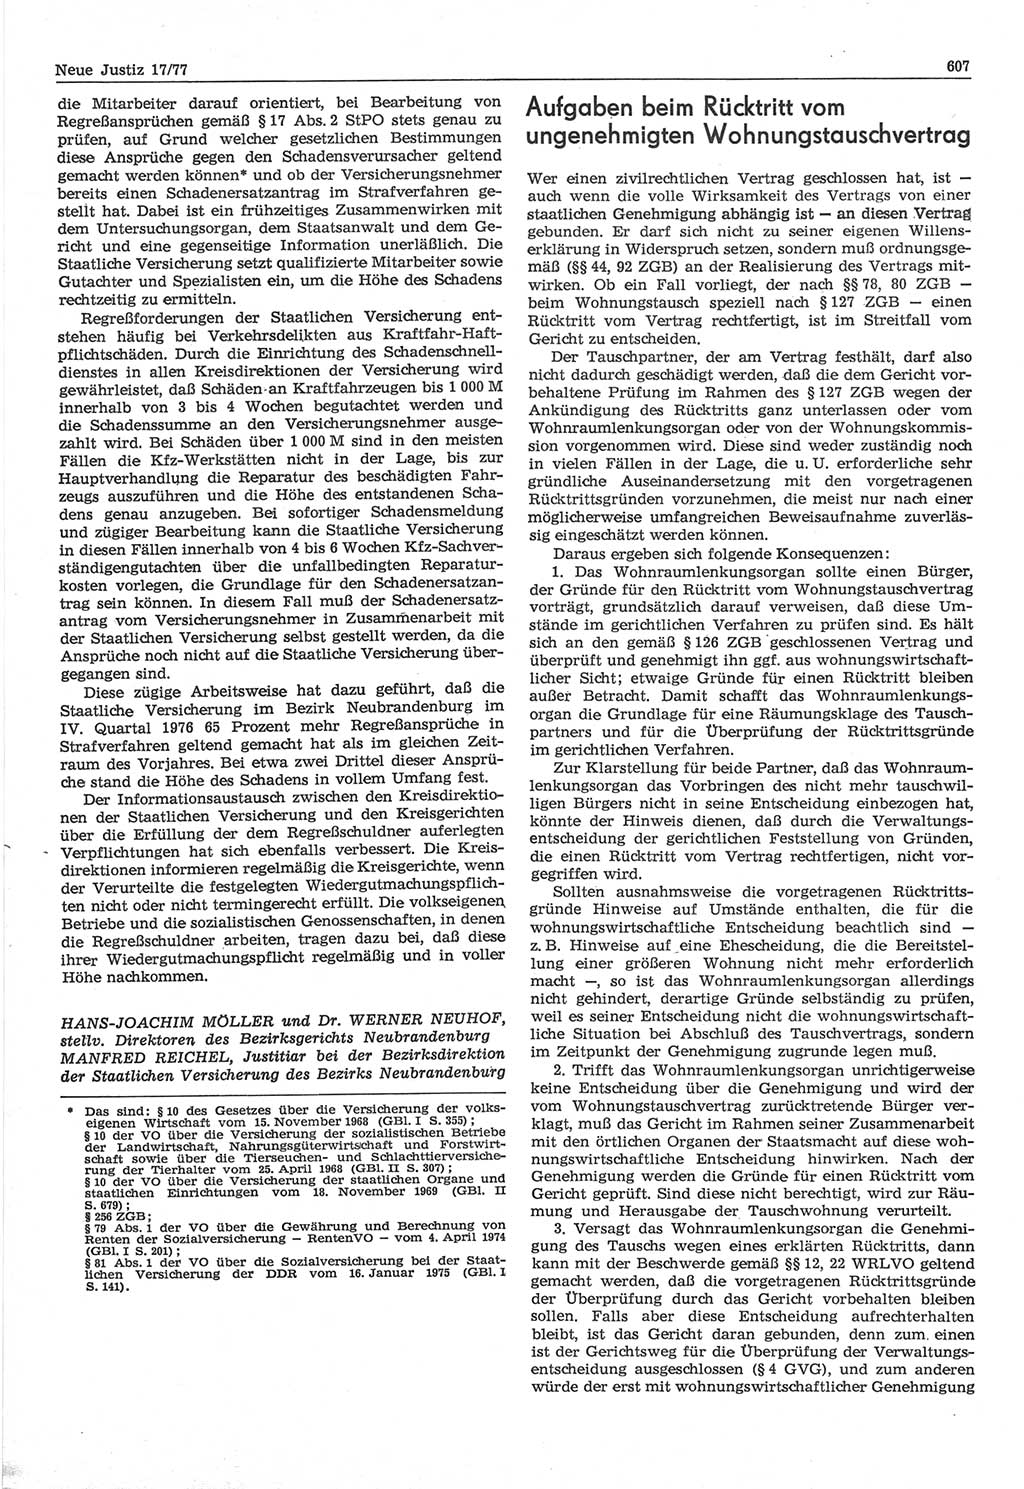 Neue Justiz (NJ), Zeitschrift für Recht und Rechtswissenschaft-Zeitschrift, sozialistisches Recht und Gesetzlichkeit, 31. Jahrgang 1977, Seite 607 (NJ DDR 1977, S. 607)